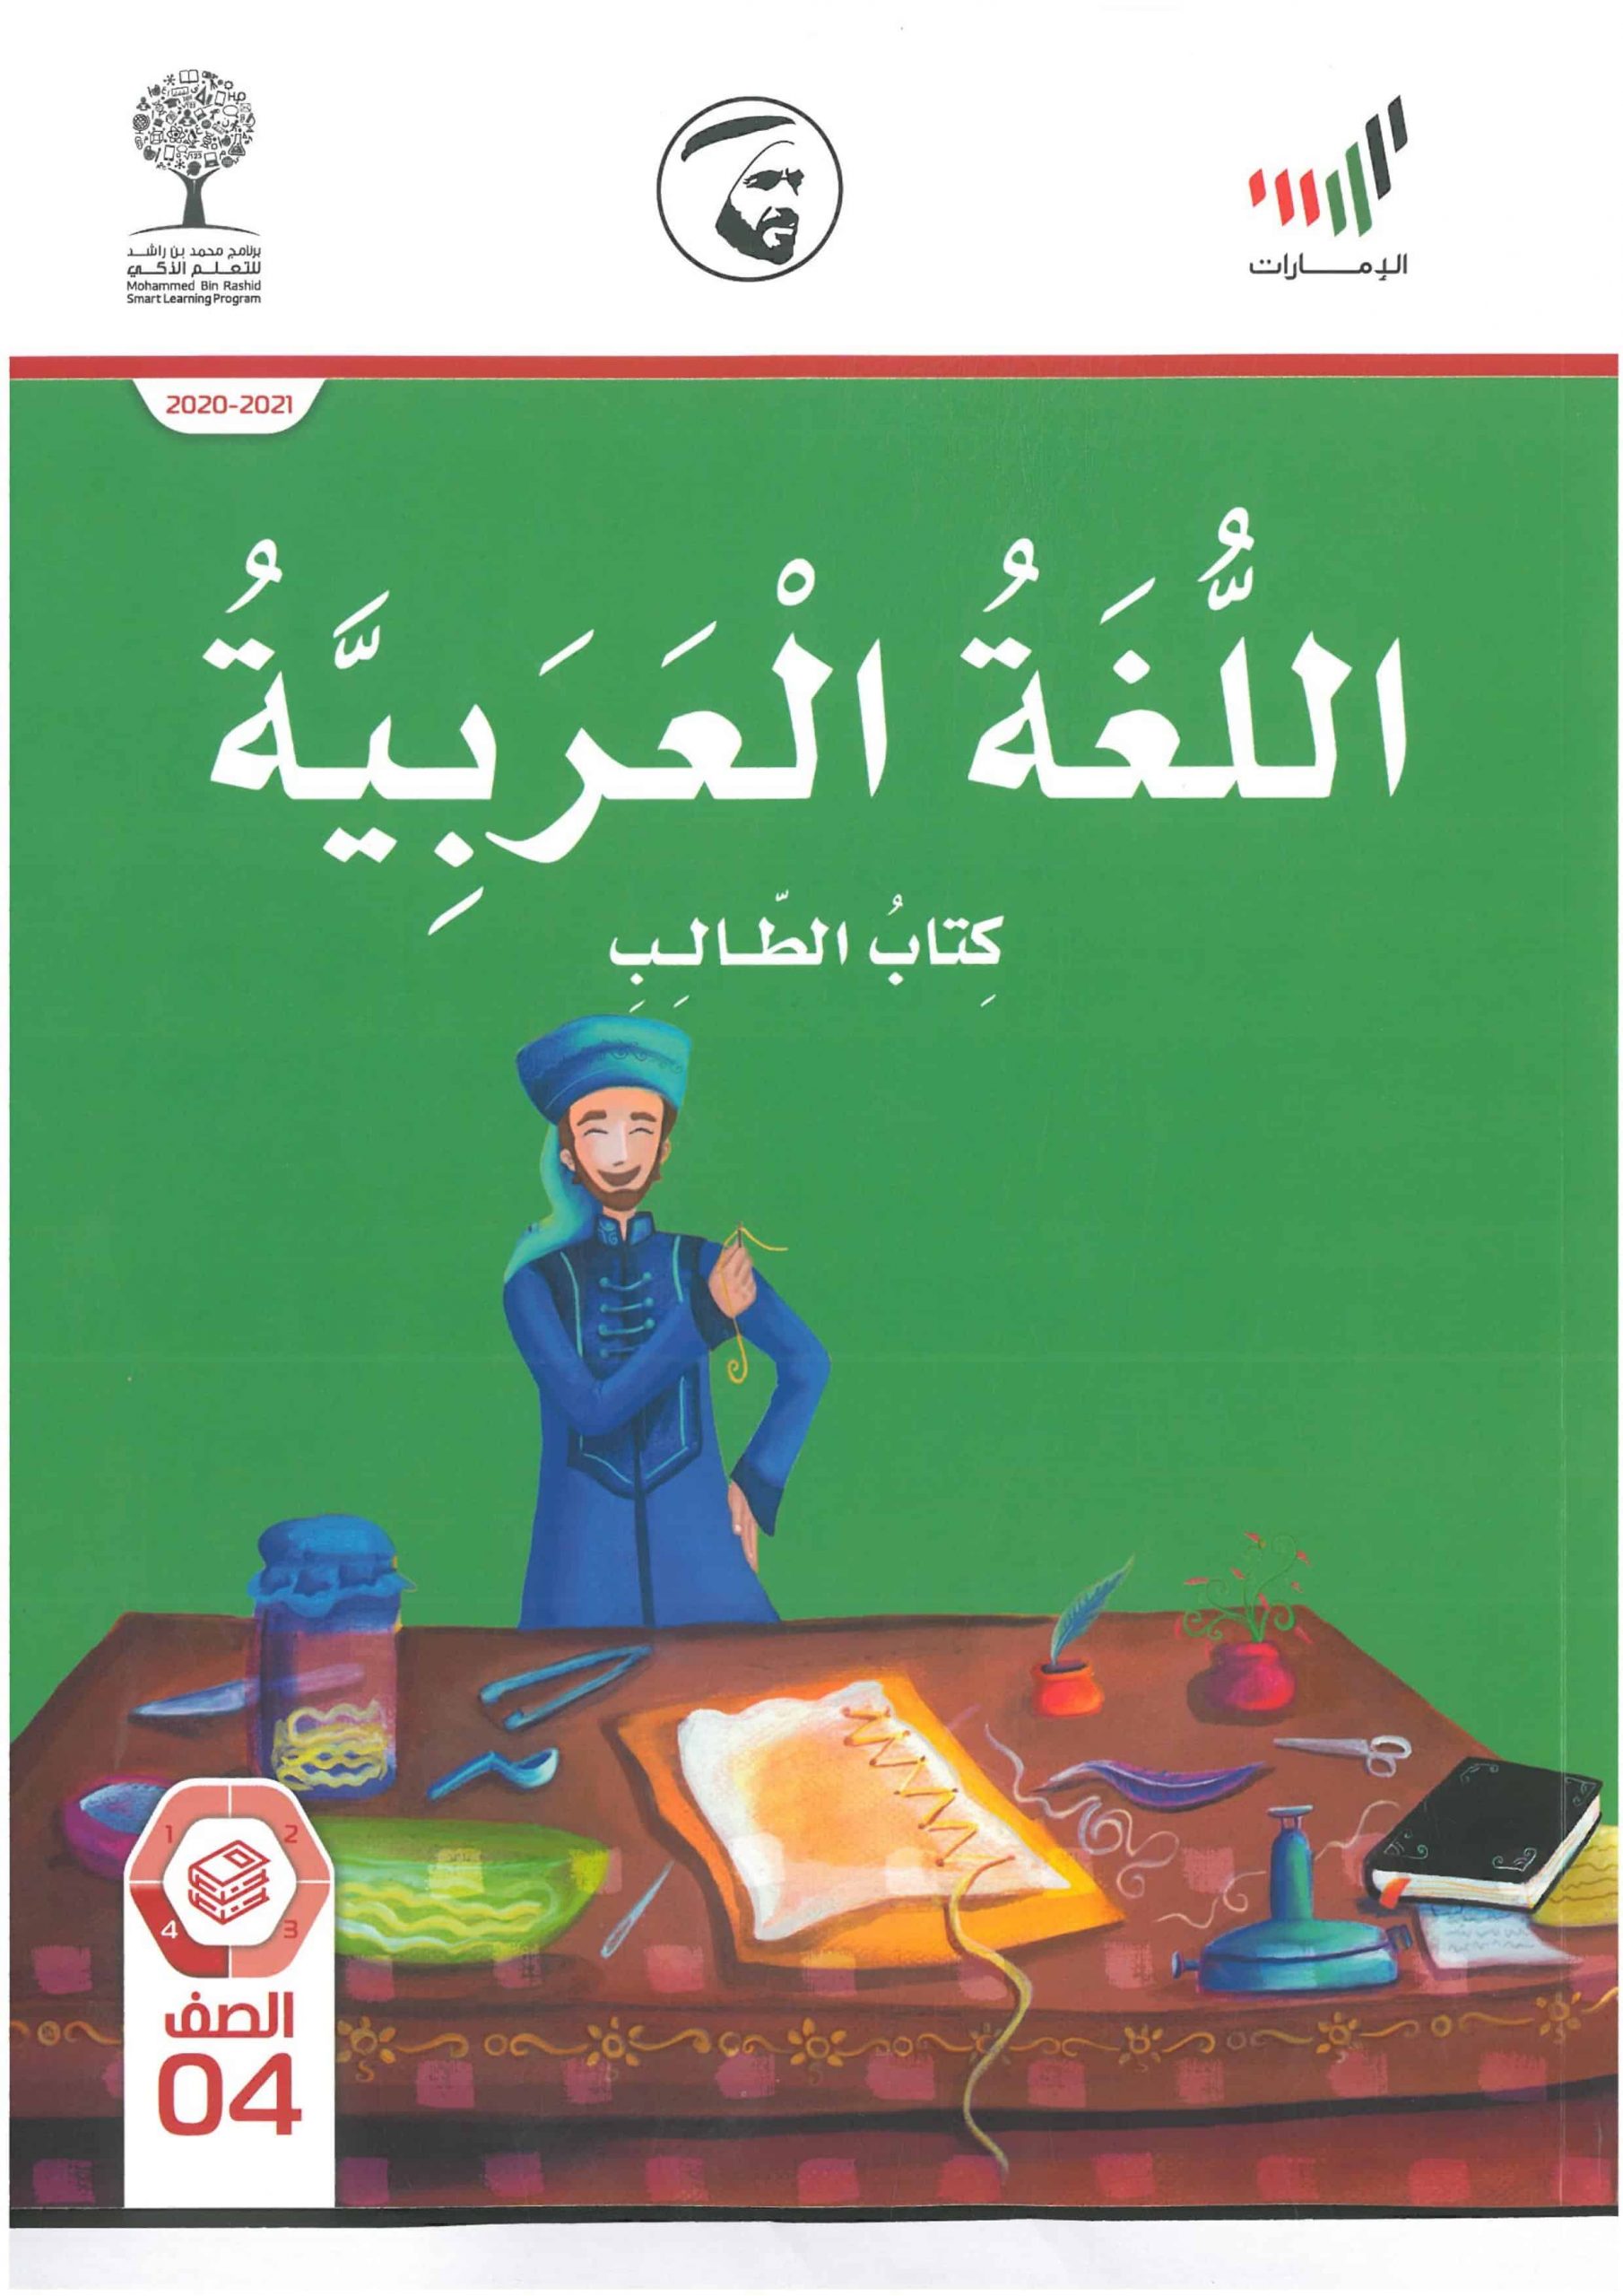 كتاب الطالب الفصل الدراسي الثالث 2020-2021 الصف الرابع مادة اللغة العربية 